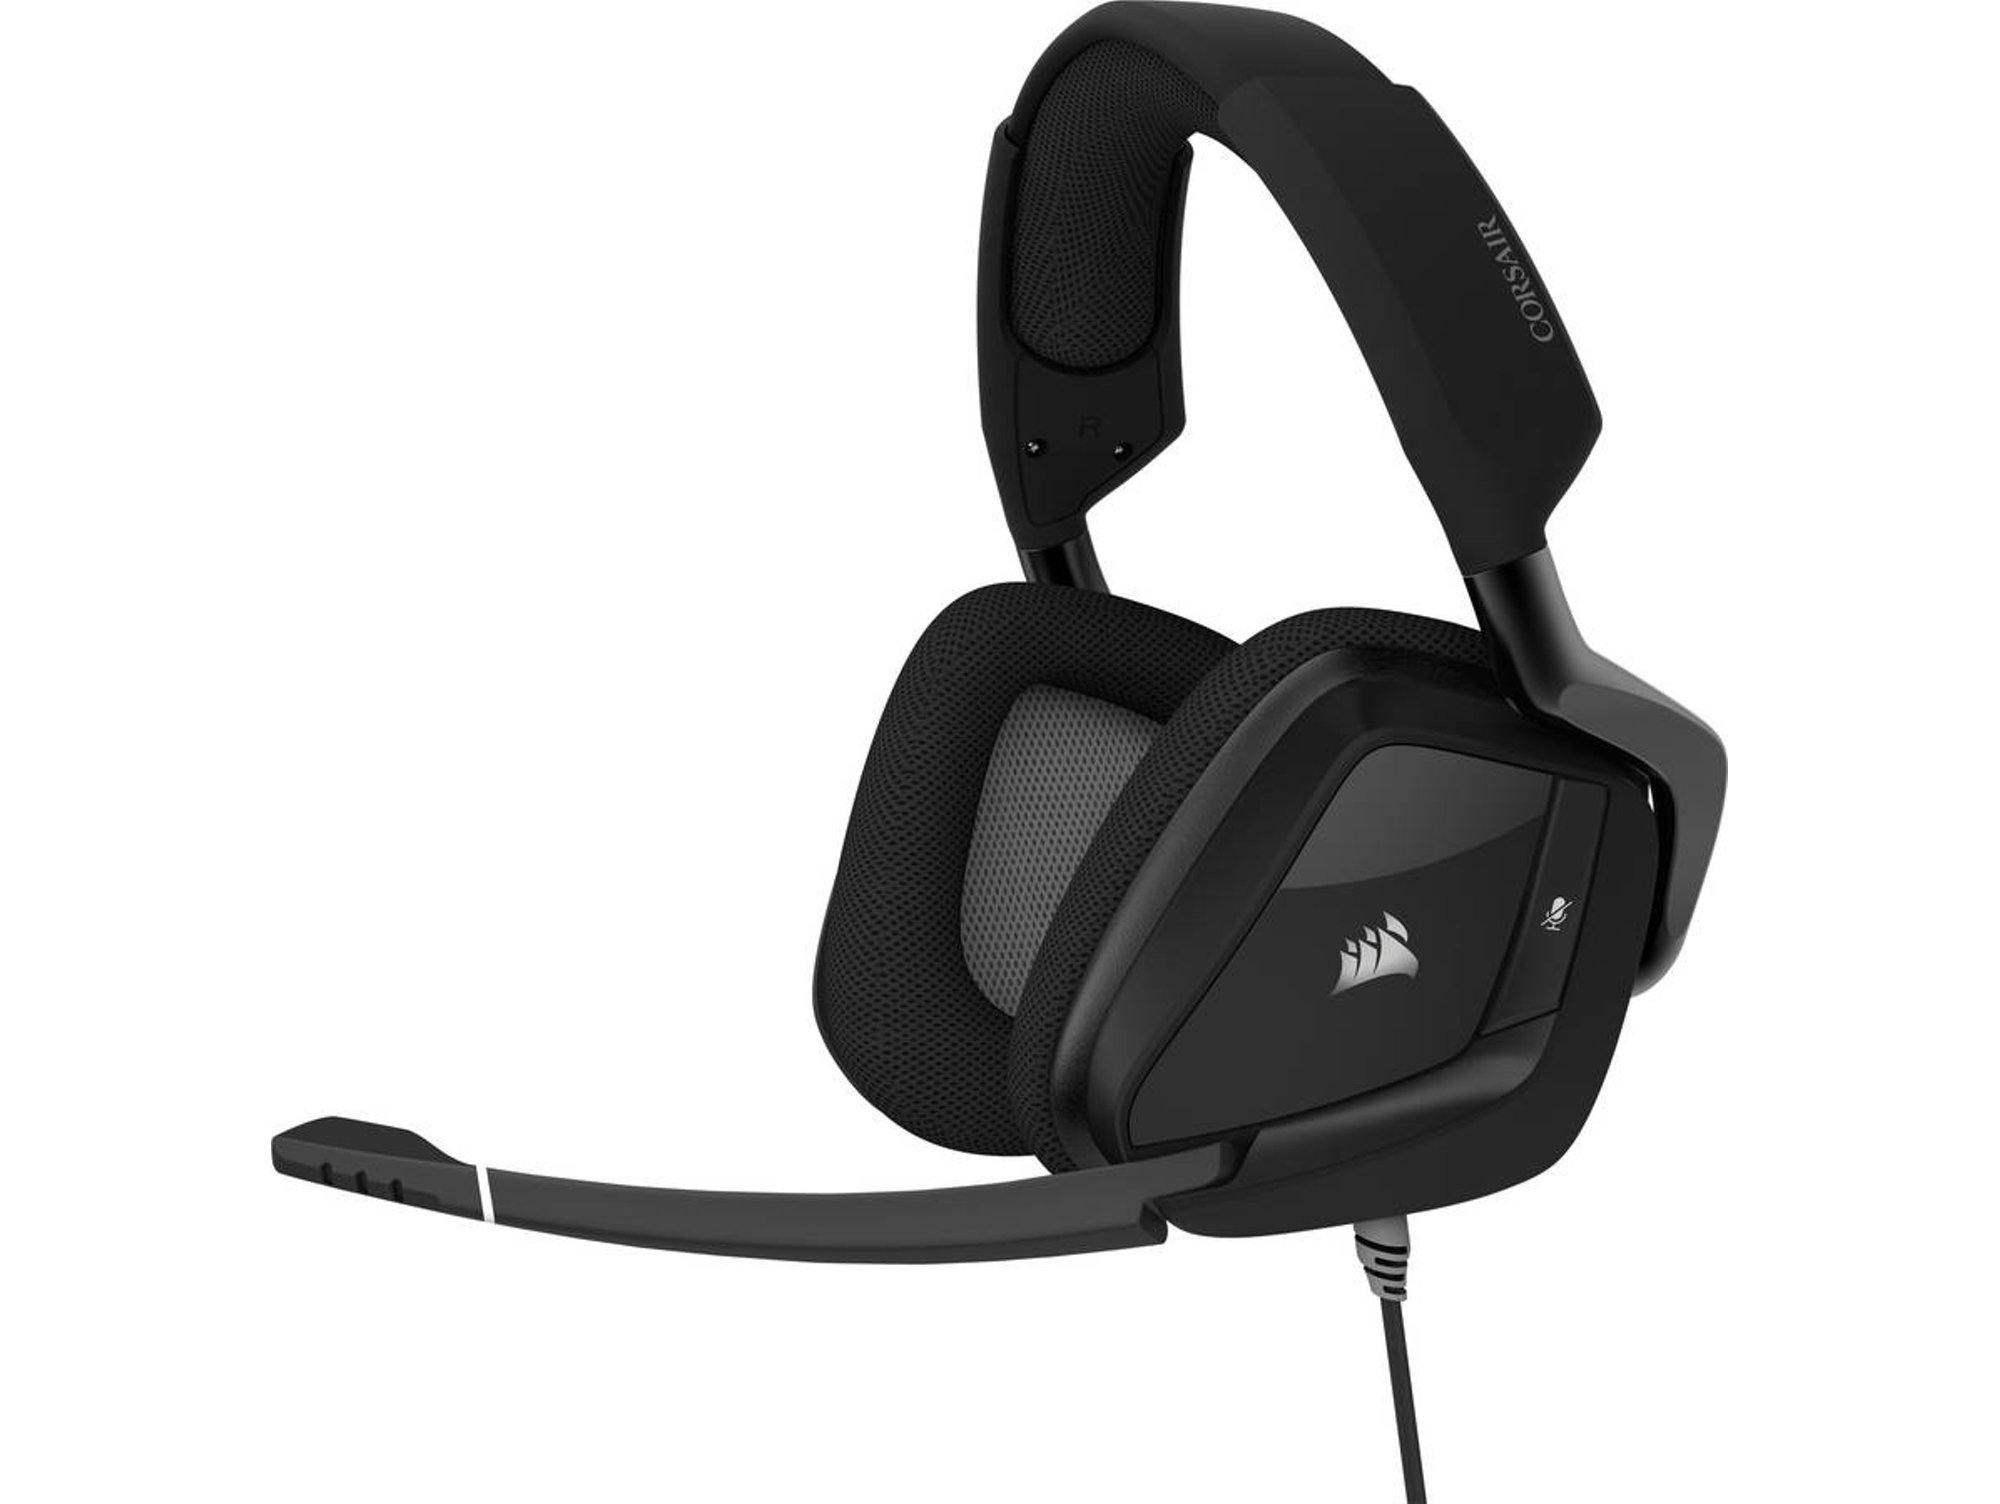 Corsair Void Elite 7.1 black carbon rgb auriculares gaming usb para juegos cableado sonido envolvente omnidireccional personalizable iluminación microfibra de rejilla almohadillas negro gris dolby pc con ca9011203eu diadema